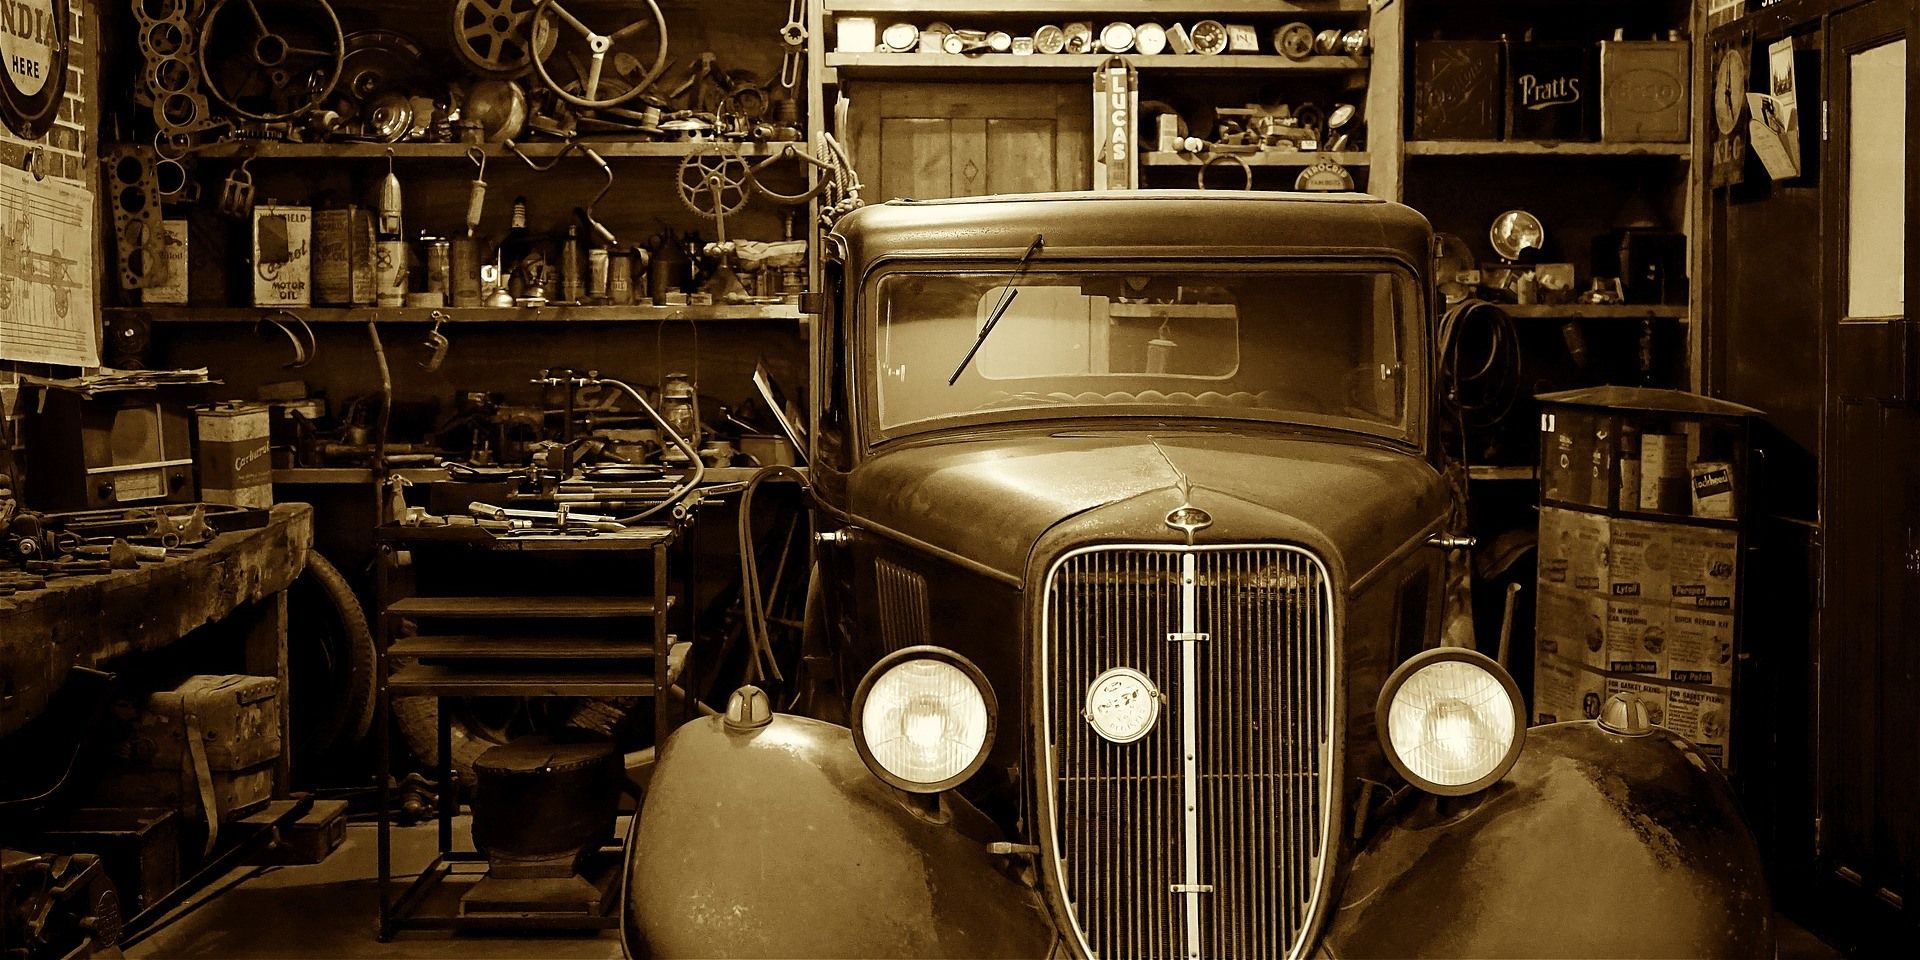 Erstellt eine zweite Vorlage für einen Online-Shop zum Thema Autoteile und Autos